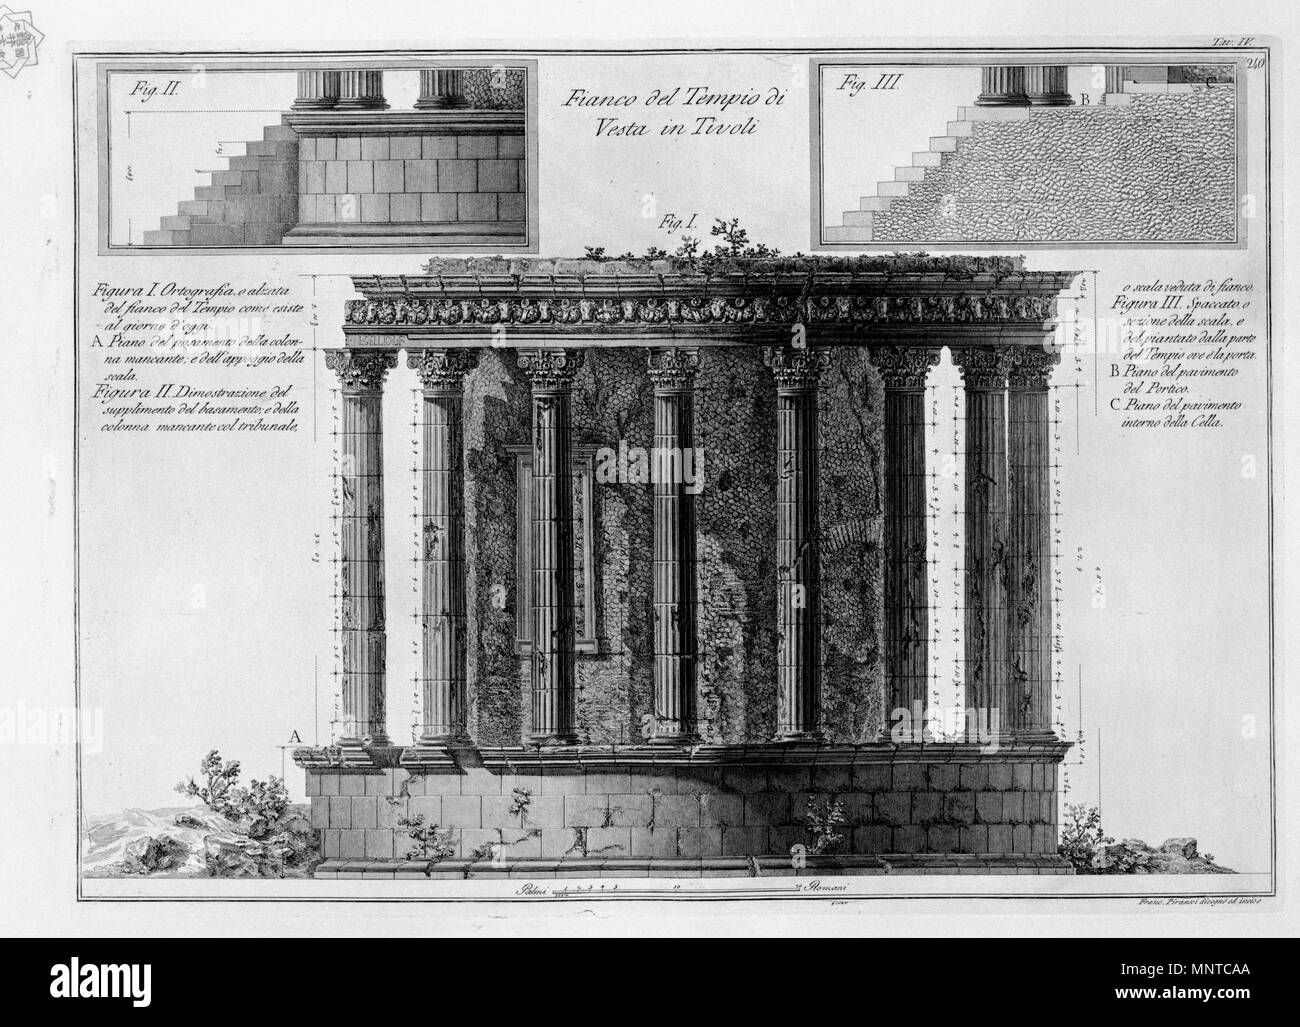 Fianco del Tempio di Vesta in Tivoli   1780.   1002 Piranesi-6005 Stock Photo